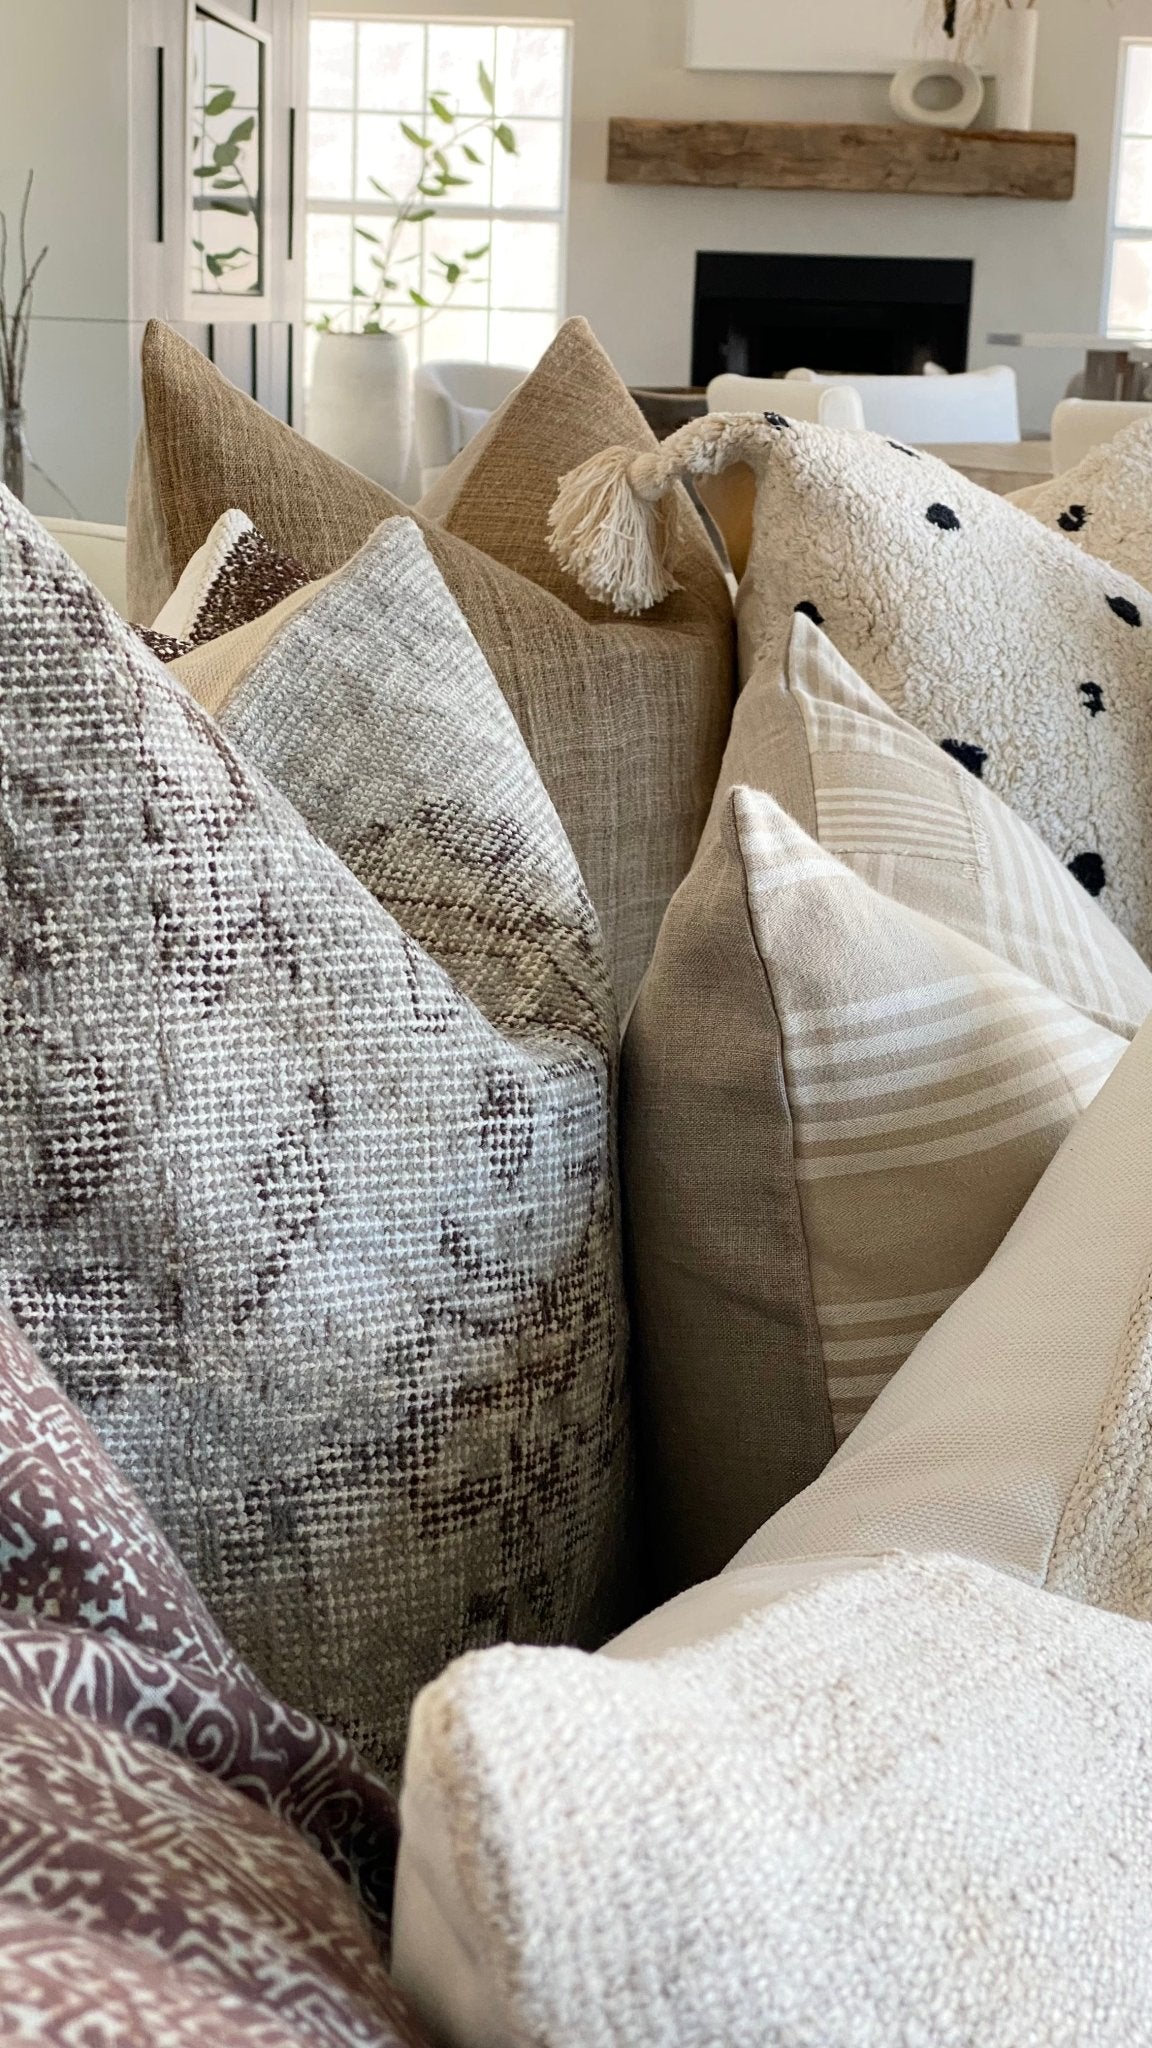 Pillows | Throws | Textiles - Debra Hall Lifestyle